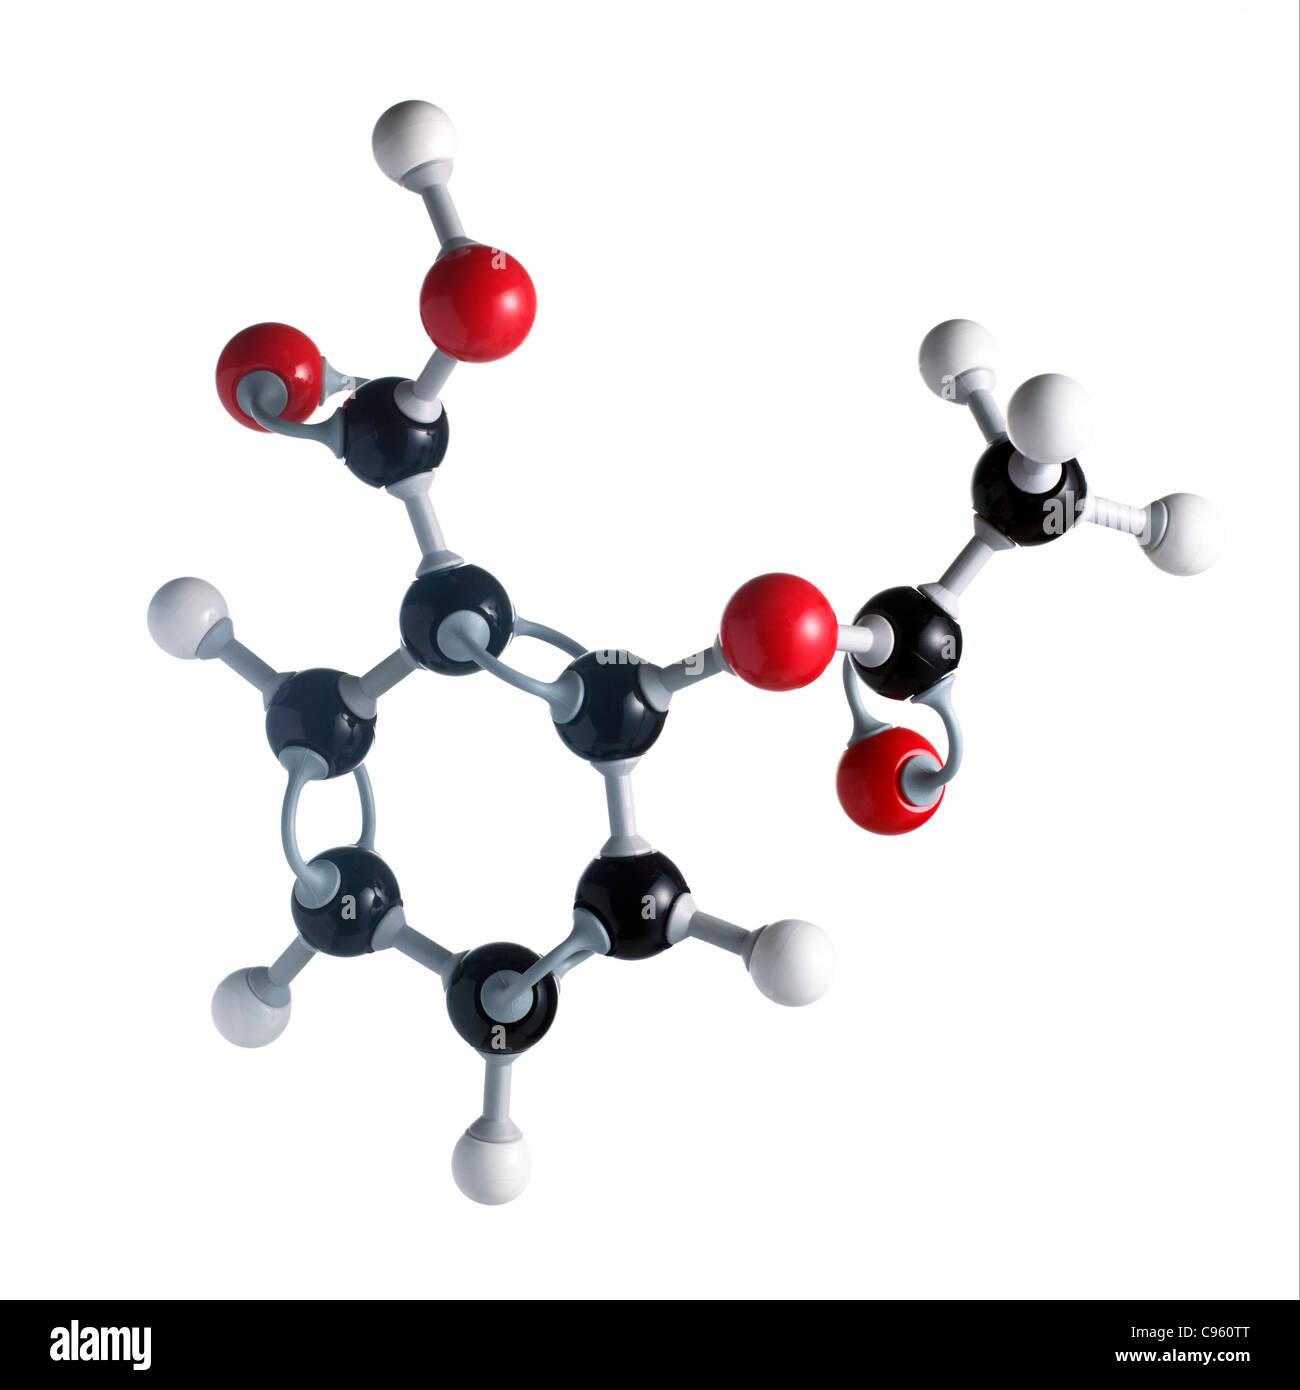 Aspirin-Molekül. Atome als Kugeln dargestellt werden und sind farblich gekennzeichnet: Kohlenstoff (schwarz) Wasserstoff (weiß) und Sauerstoff (rot). Stockfoto